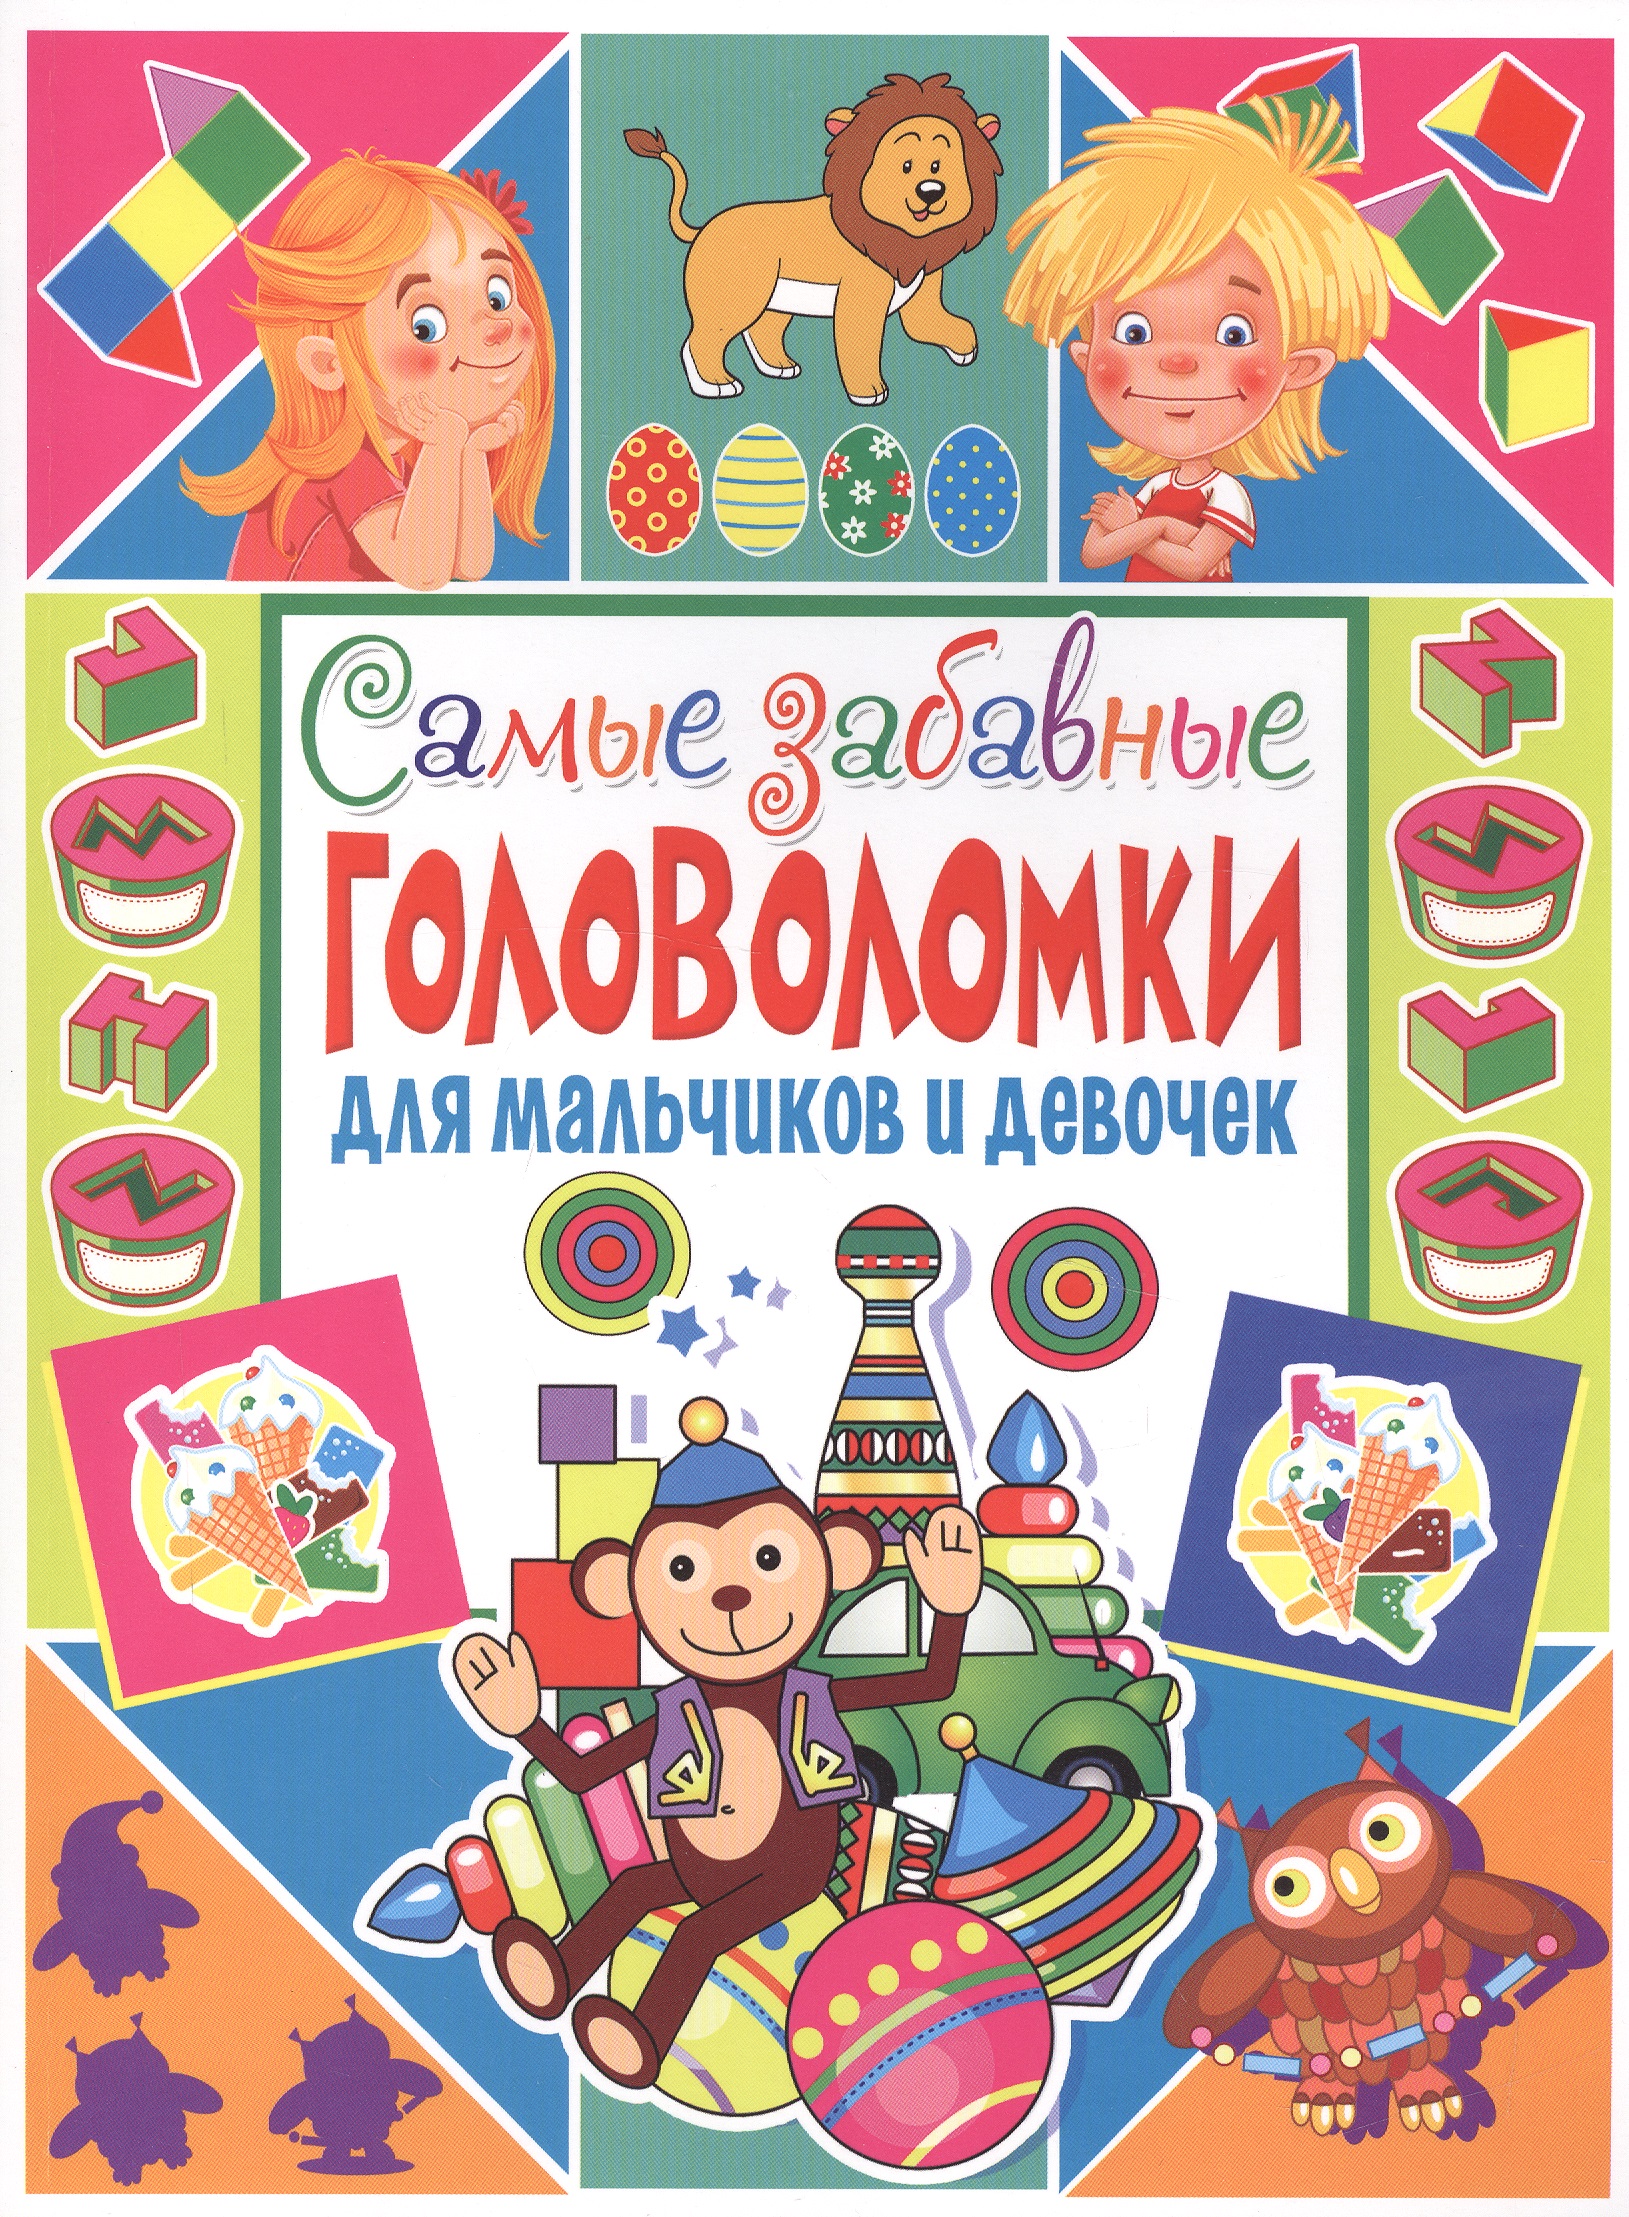 Скиба Тамара Викторовна Самые забавные головоломки для мальчиков и девочек самые забавные головоломки для мальчиков и девочек